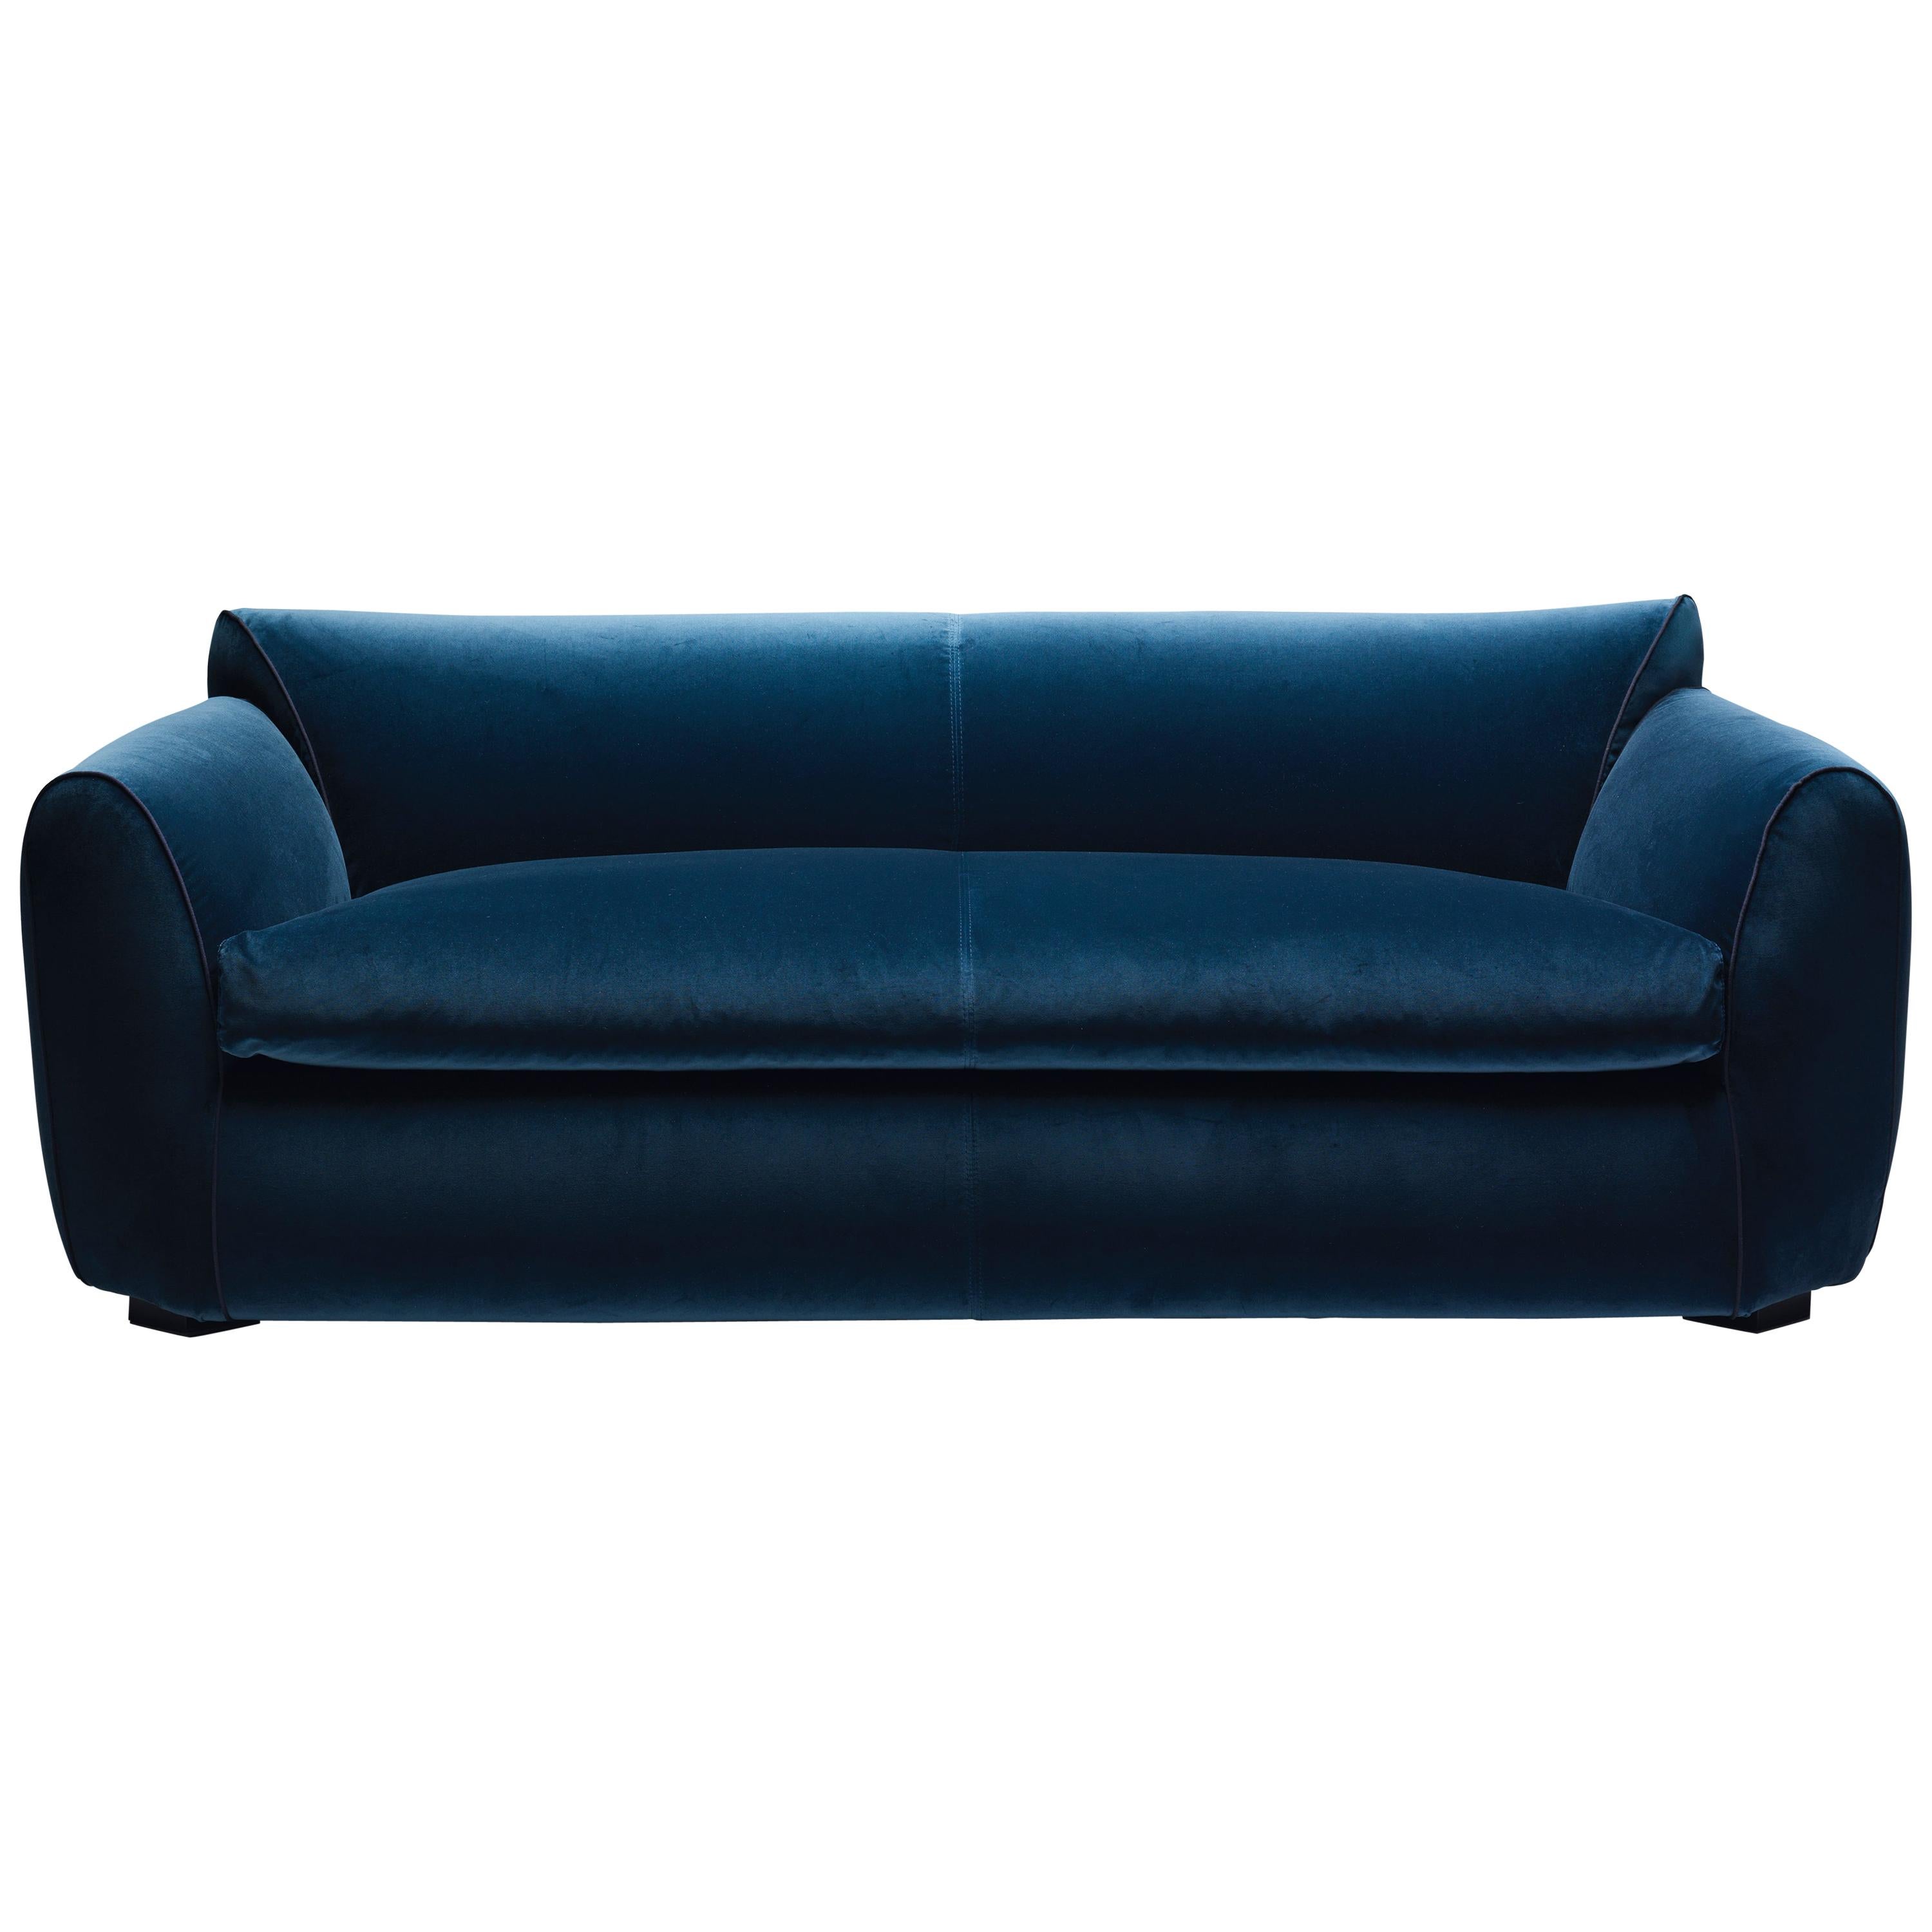 Modernes italienisches Sofa des 21. Jahrhunderts, gepolstert mit Baumwollsamt